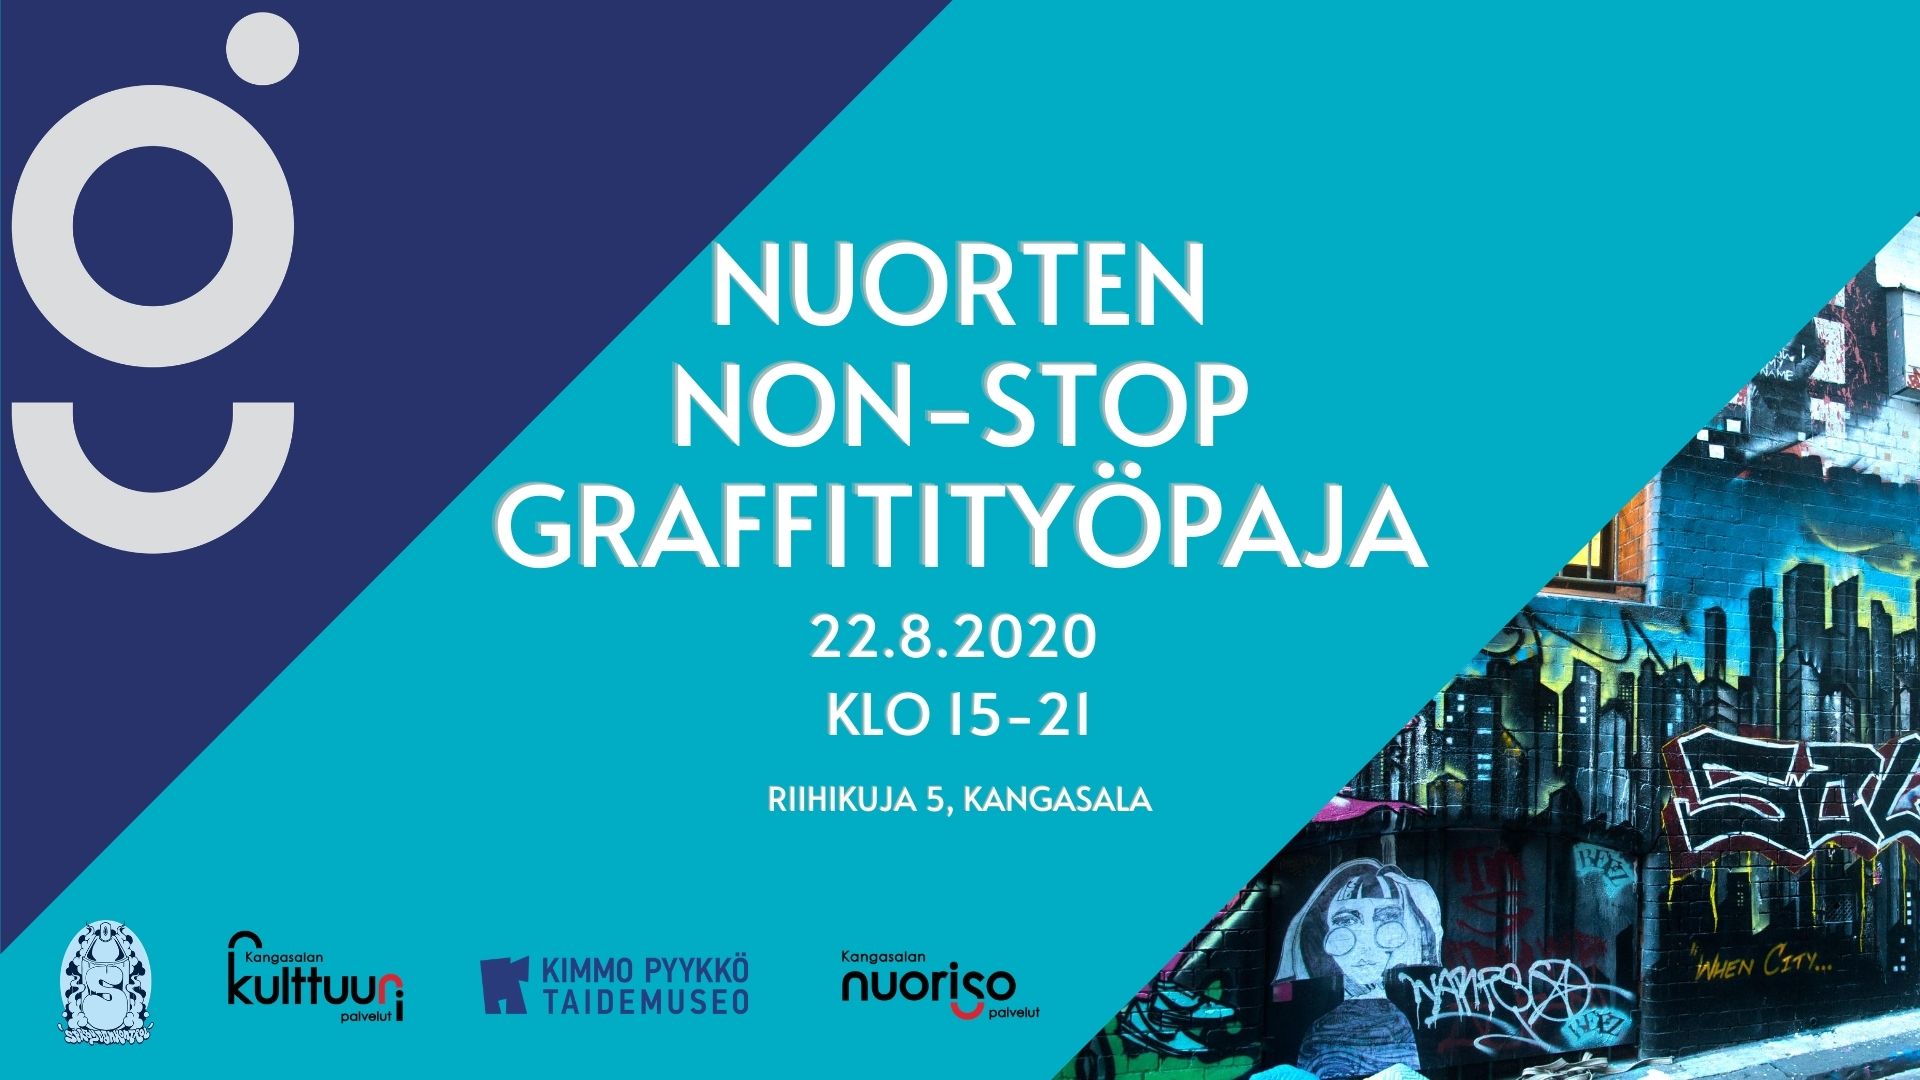 Nuorten non-stop graffitityöpaja 22.8.2020.